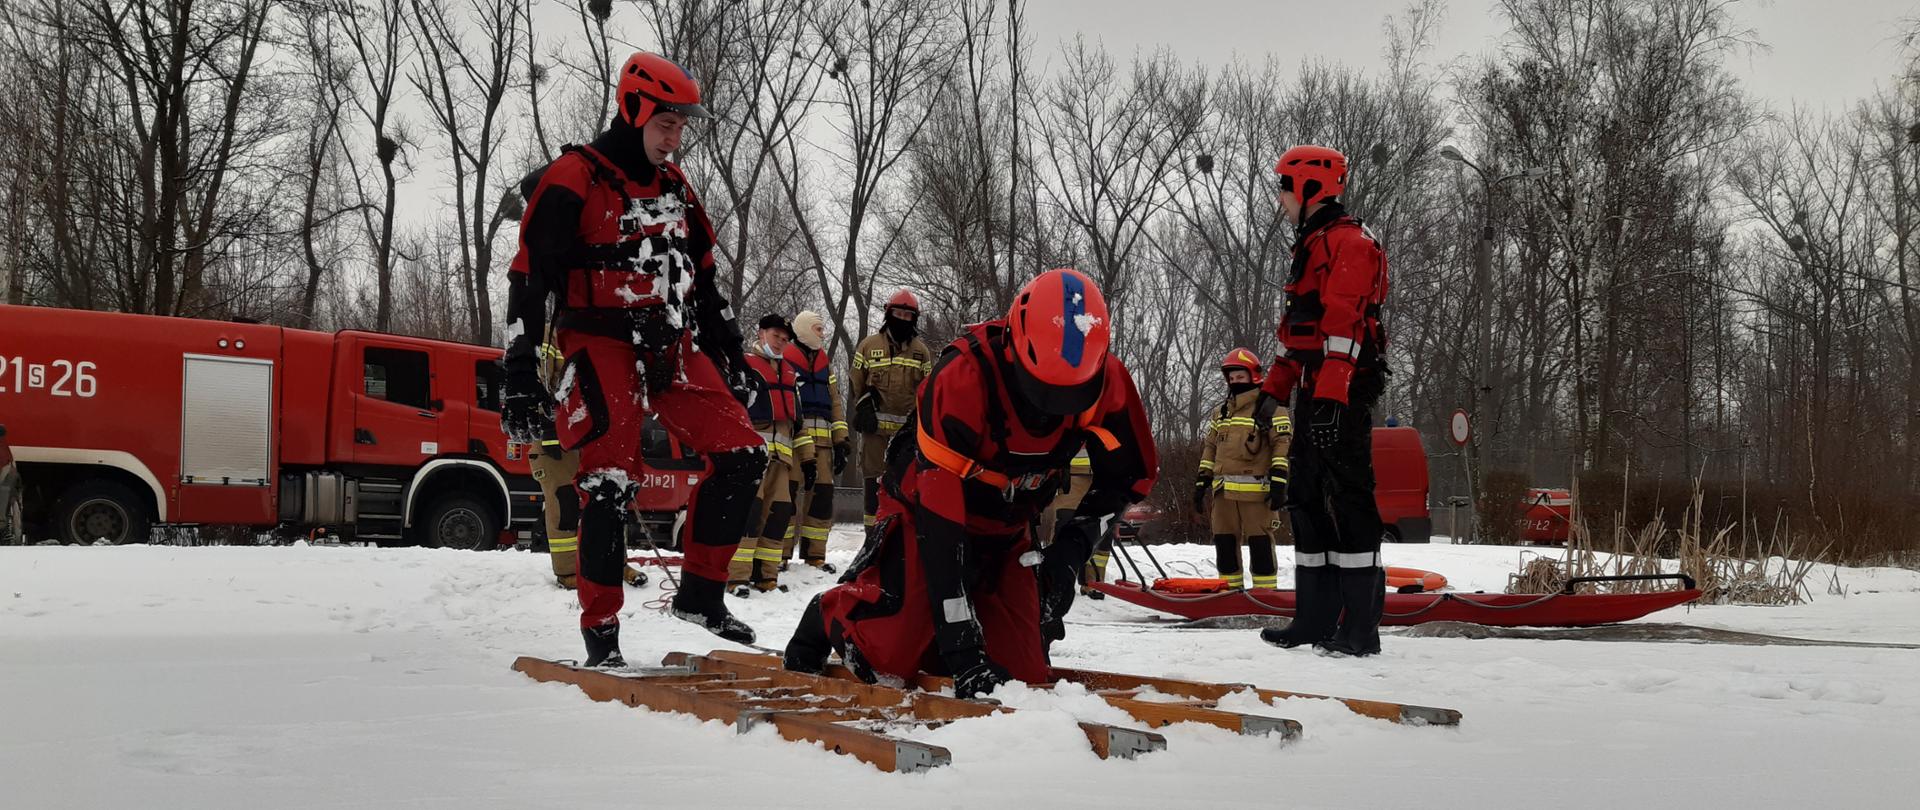 Zdjęcie przedstawia grupę strażaków przygotowujących się do ćwiczeń z zakresu ratownictwa lodowego.